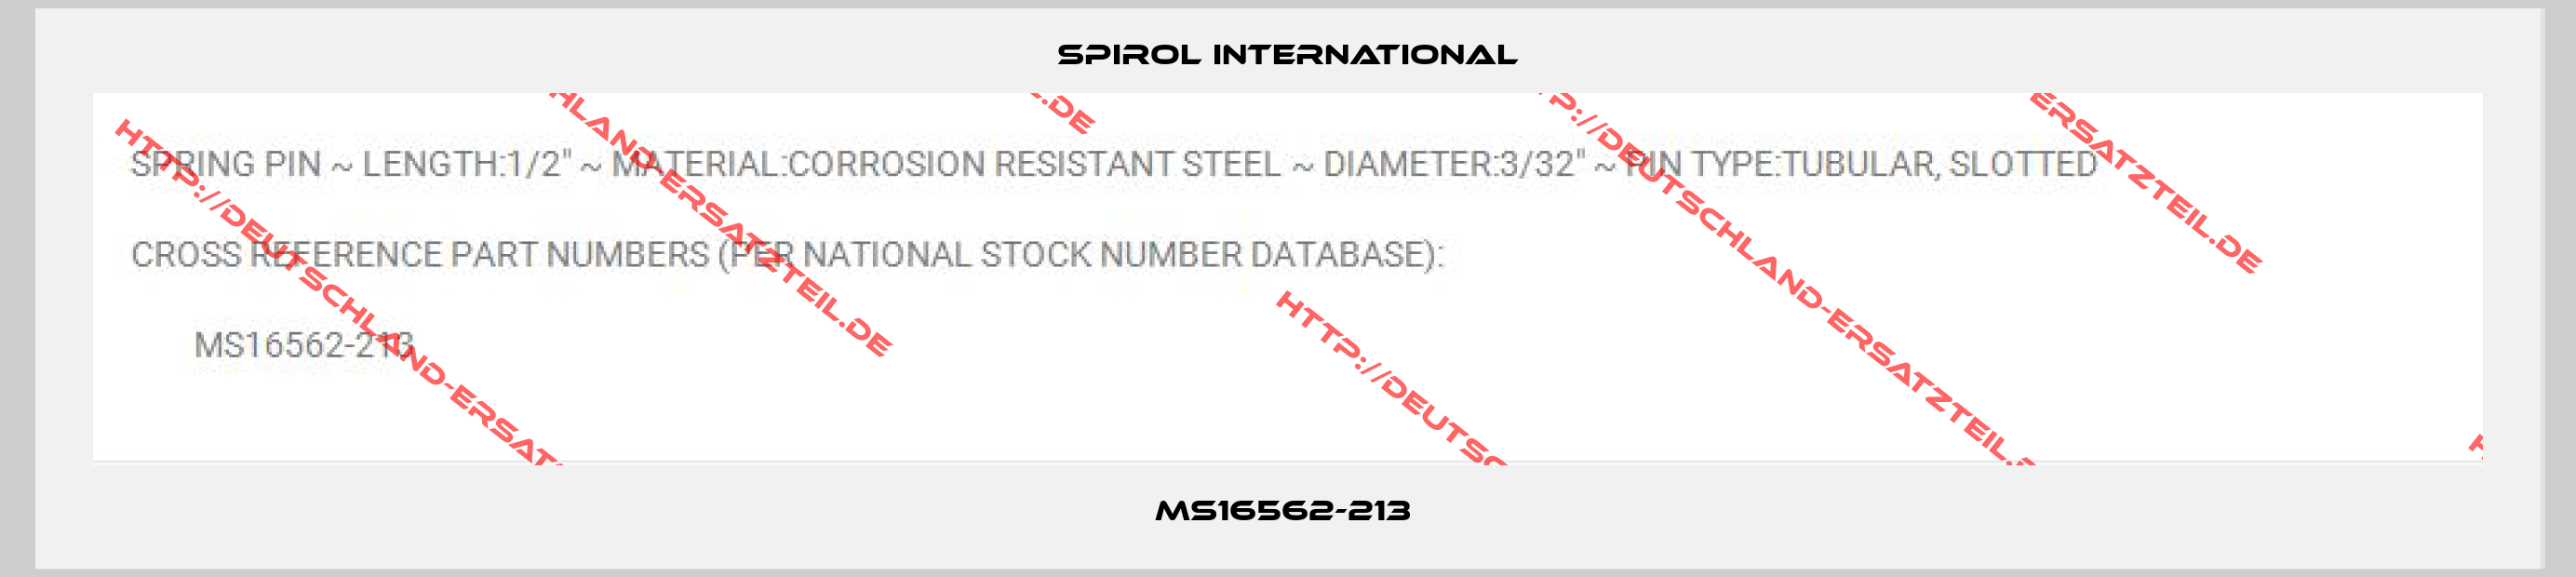 Spirol international-MS16562-213 